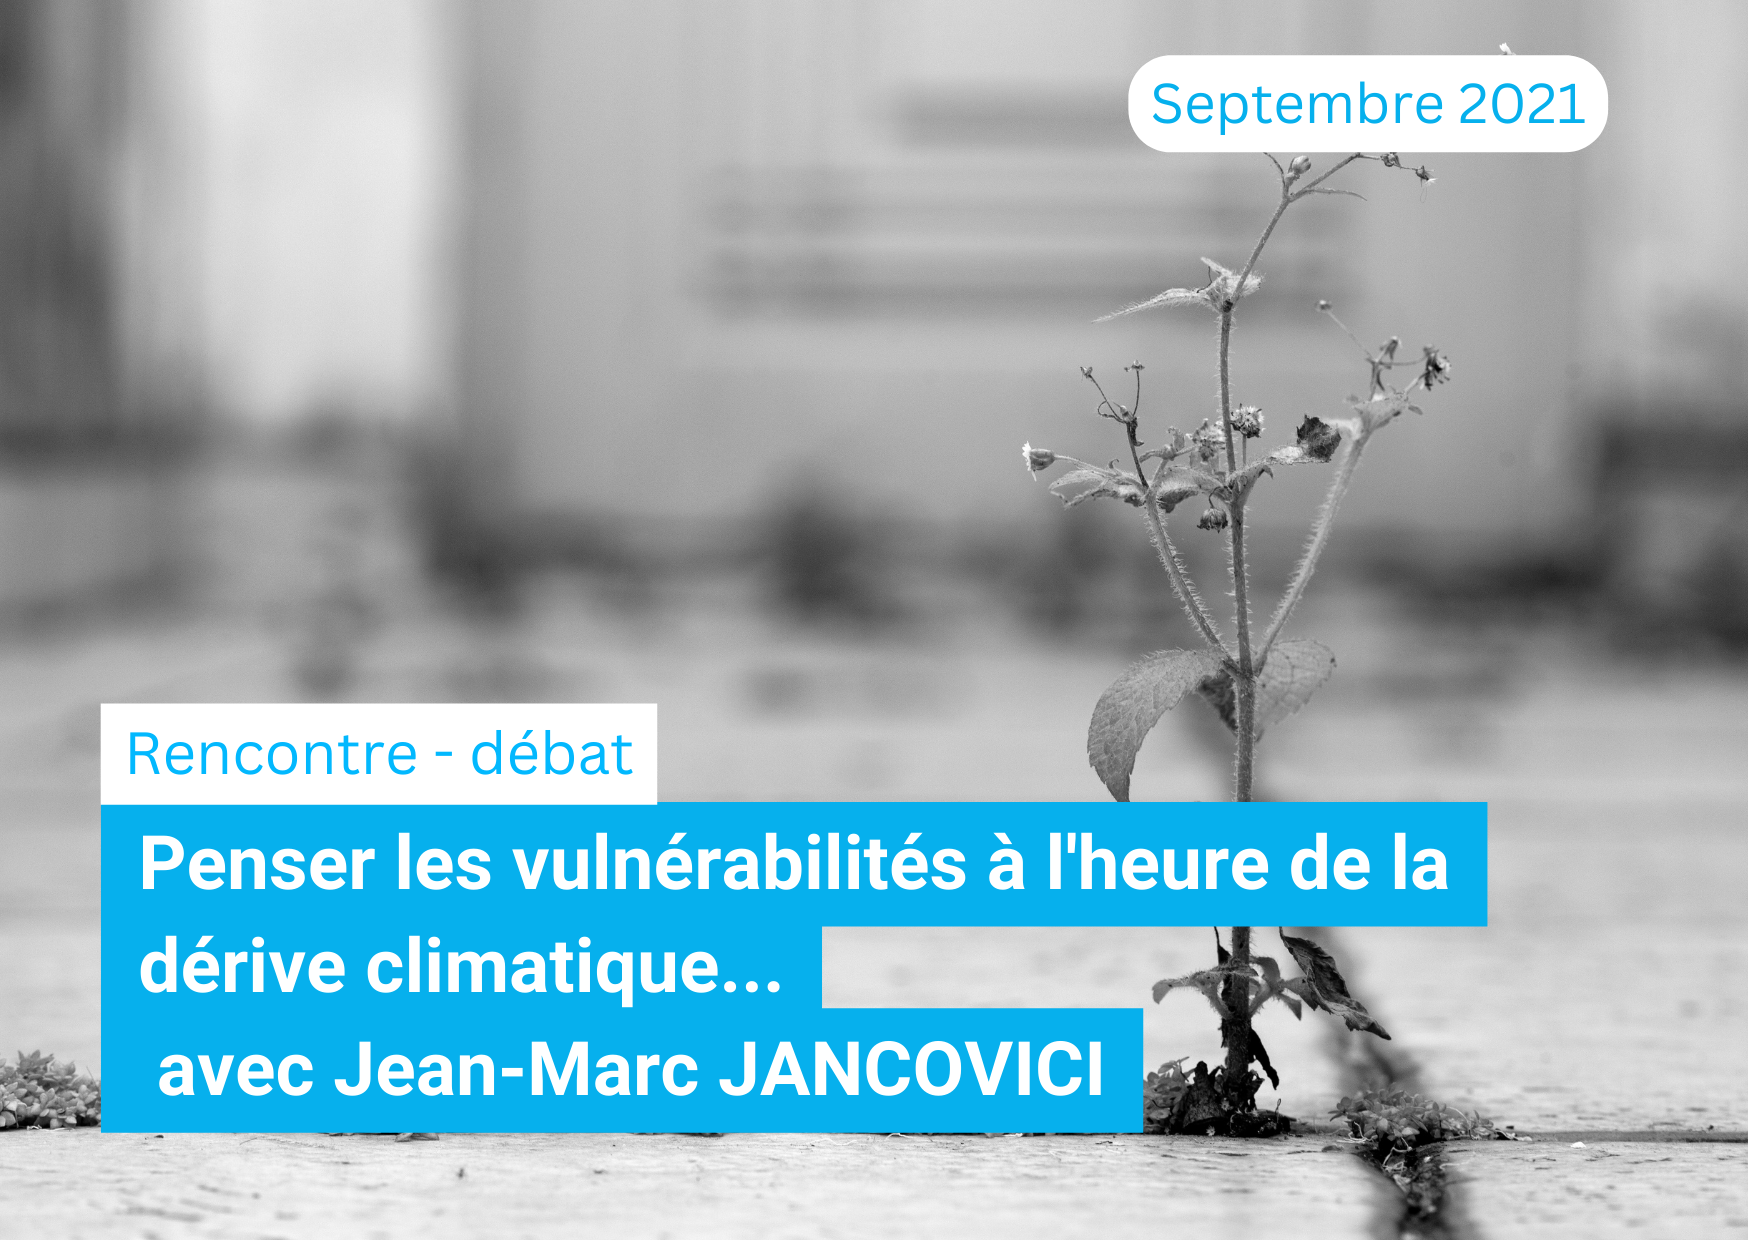 enser les vulnérabilités à l'heure de la dérive climatique..." avec Jean-Marc JANCOVICI - 09/09/21